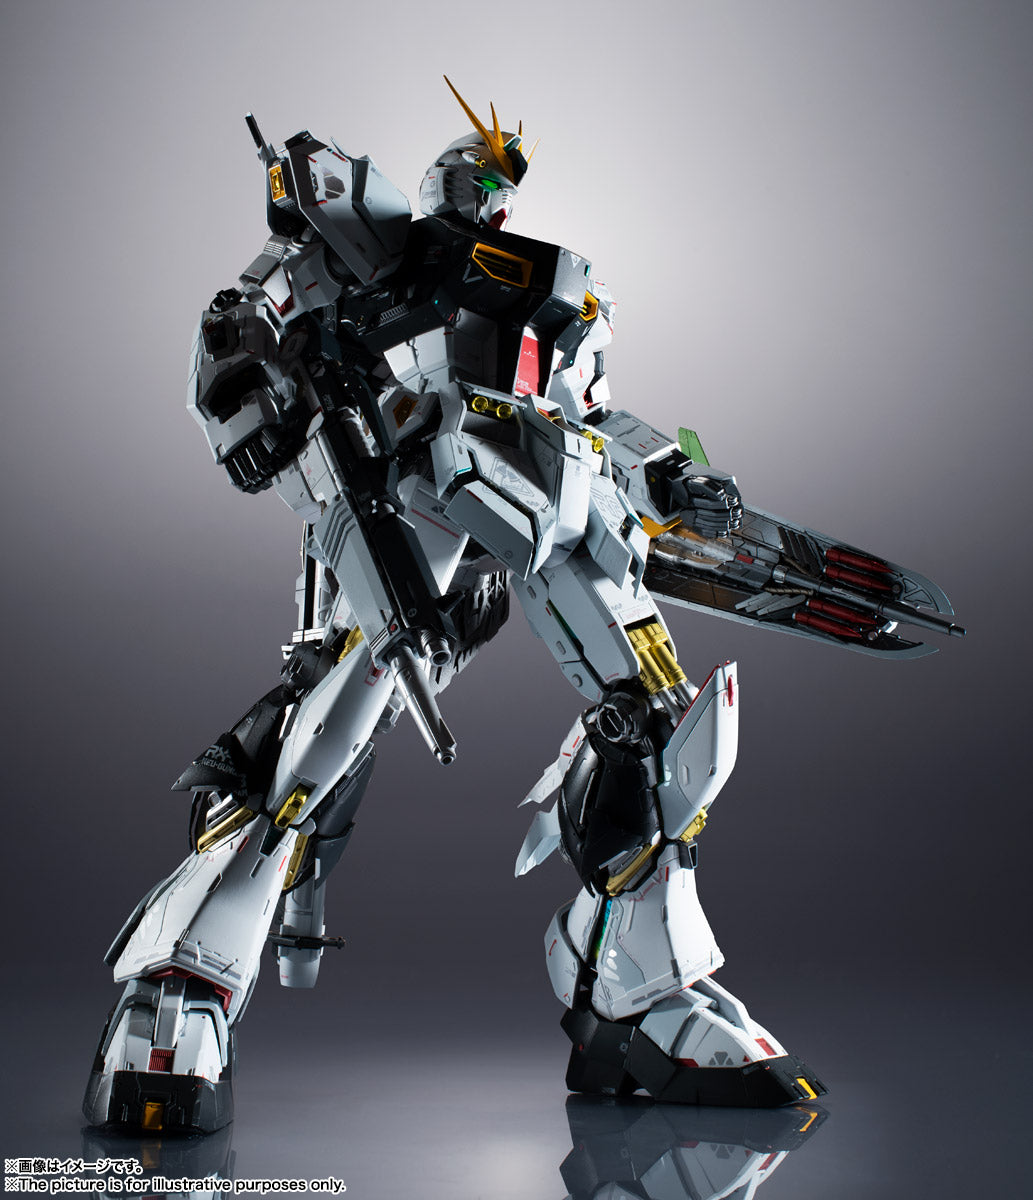 Bandai METAL STRUCTURE RX-93 V Gundam Resale Version - BanzaiHobby